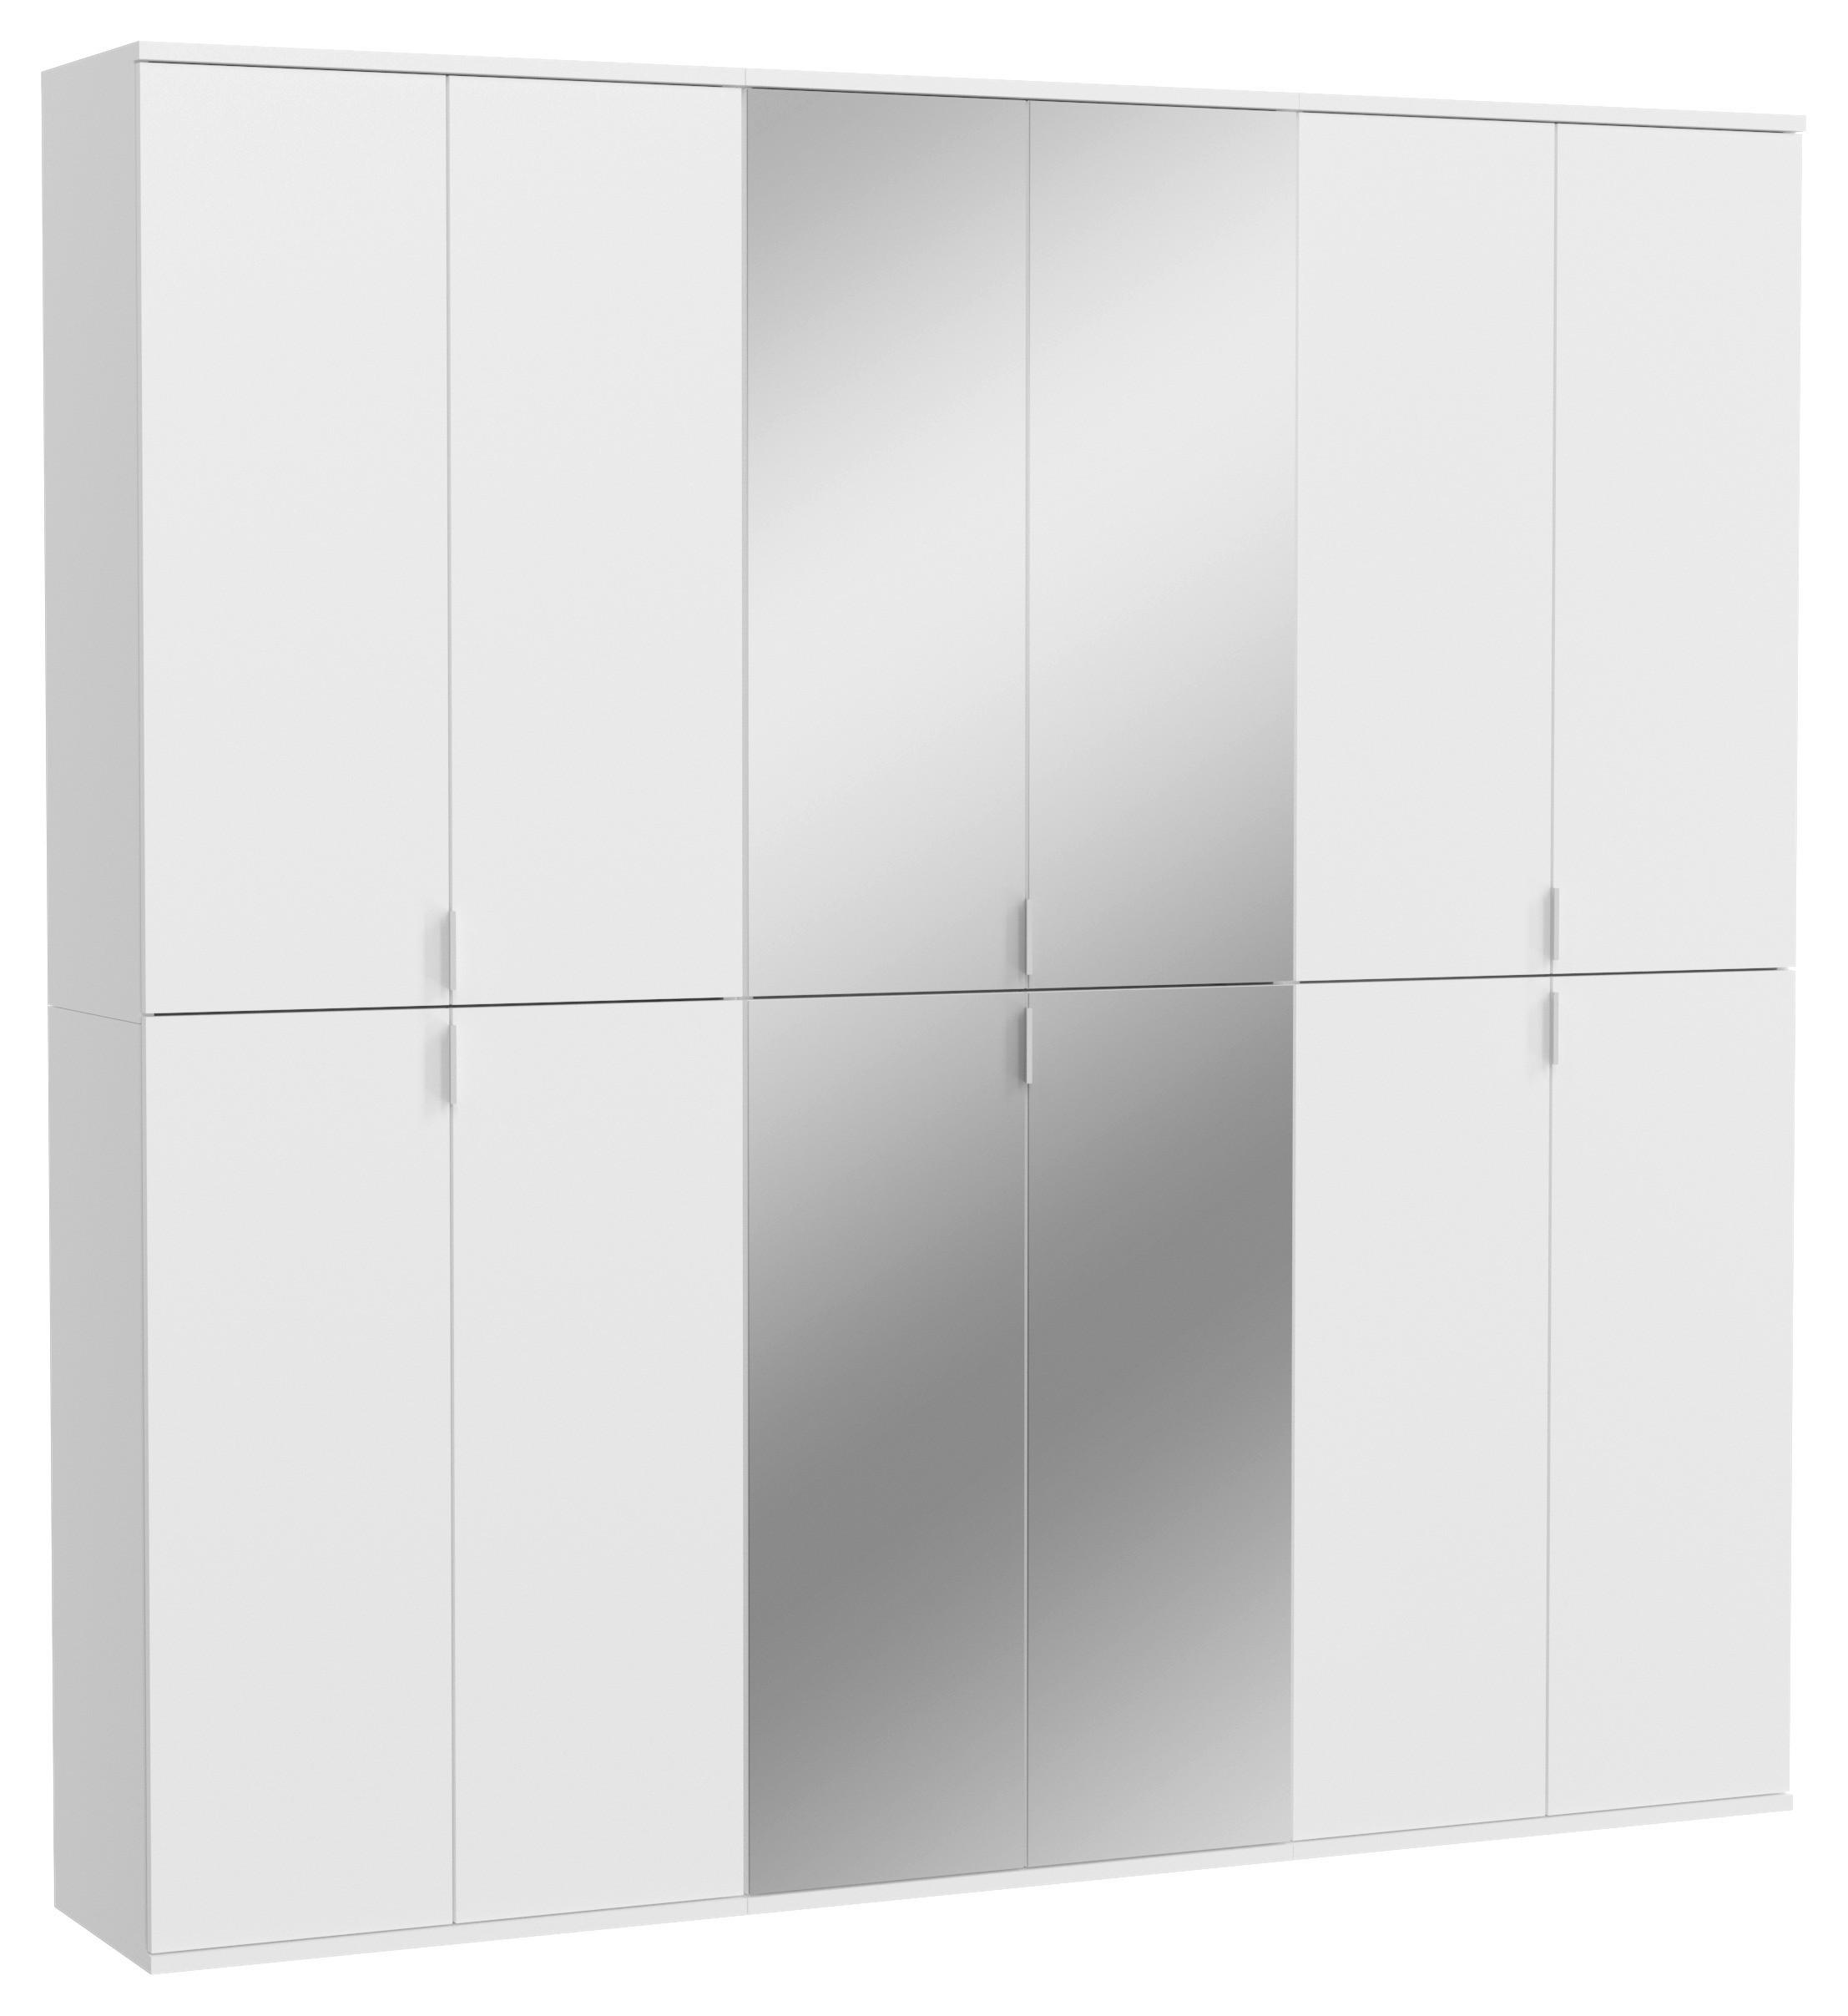 DREHTÜRENSCHRANK 12-türig Weiß  - Chromfarben/Weiß Hochglanz, MODERN, Glas/Holzwerkstoff (183/193/34cm) - MID.YOU